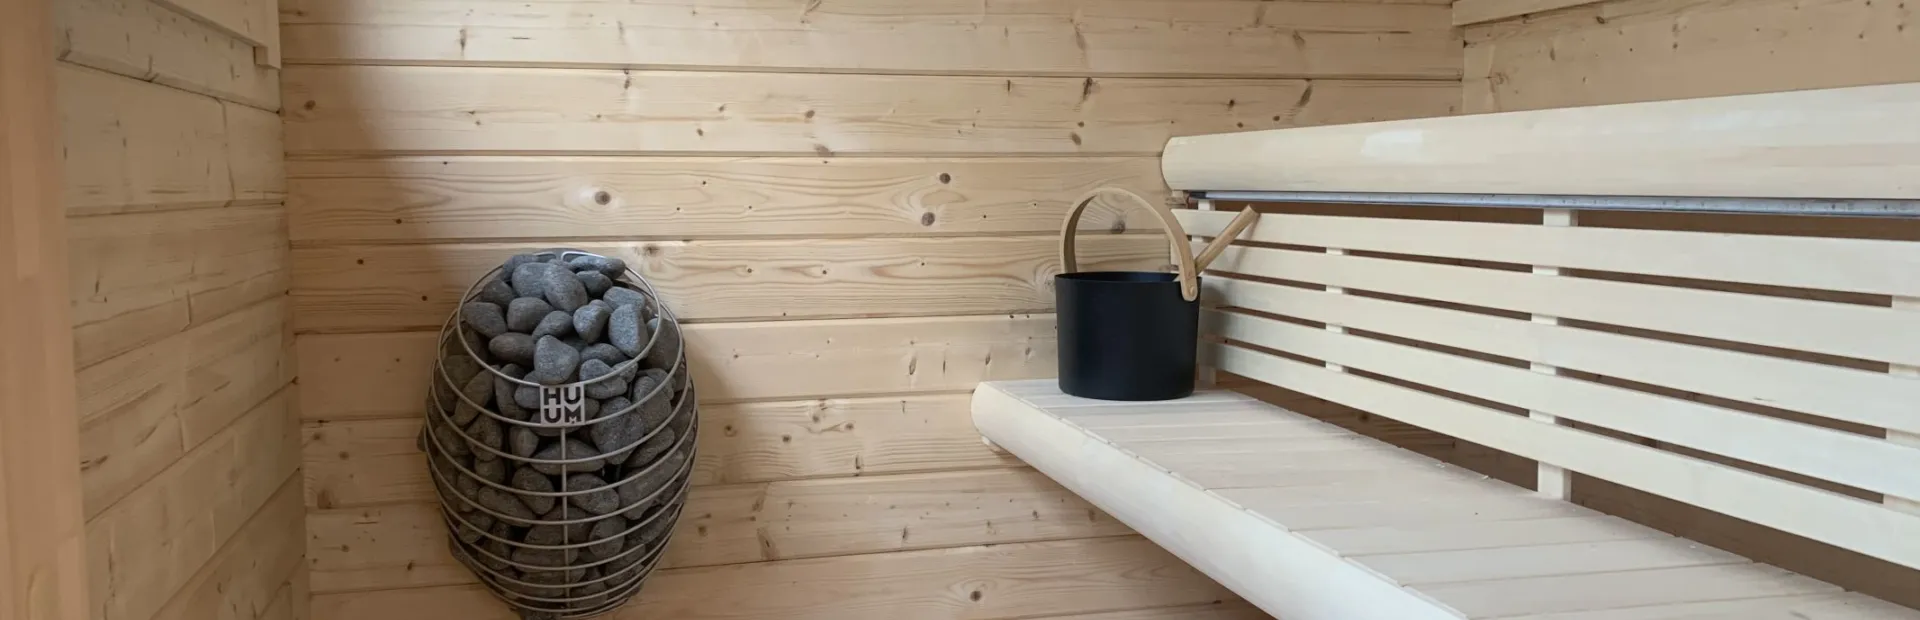 Huisje met sauna huren Ommen Lounge 1 52